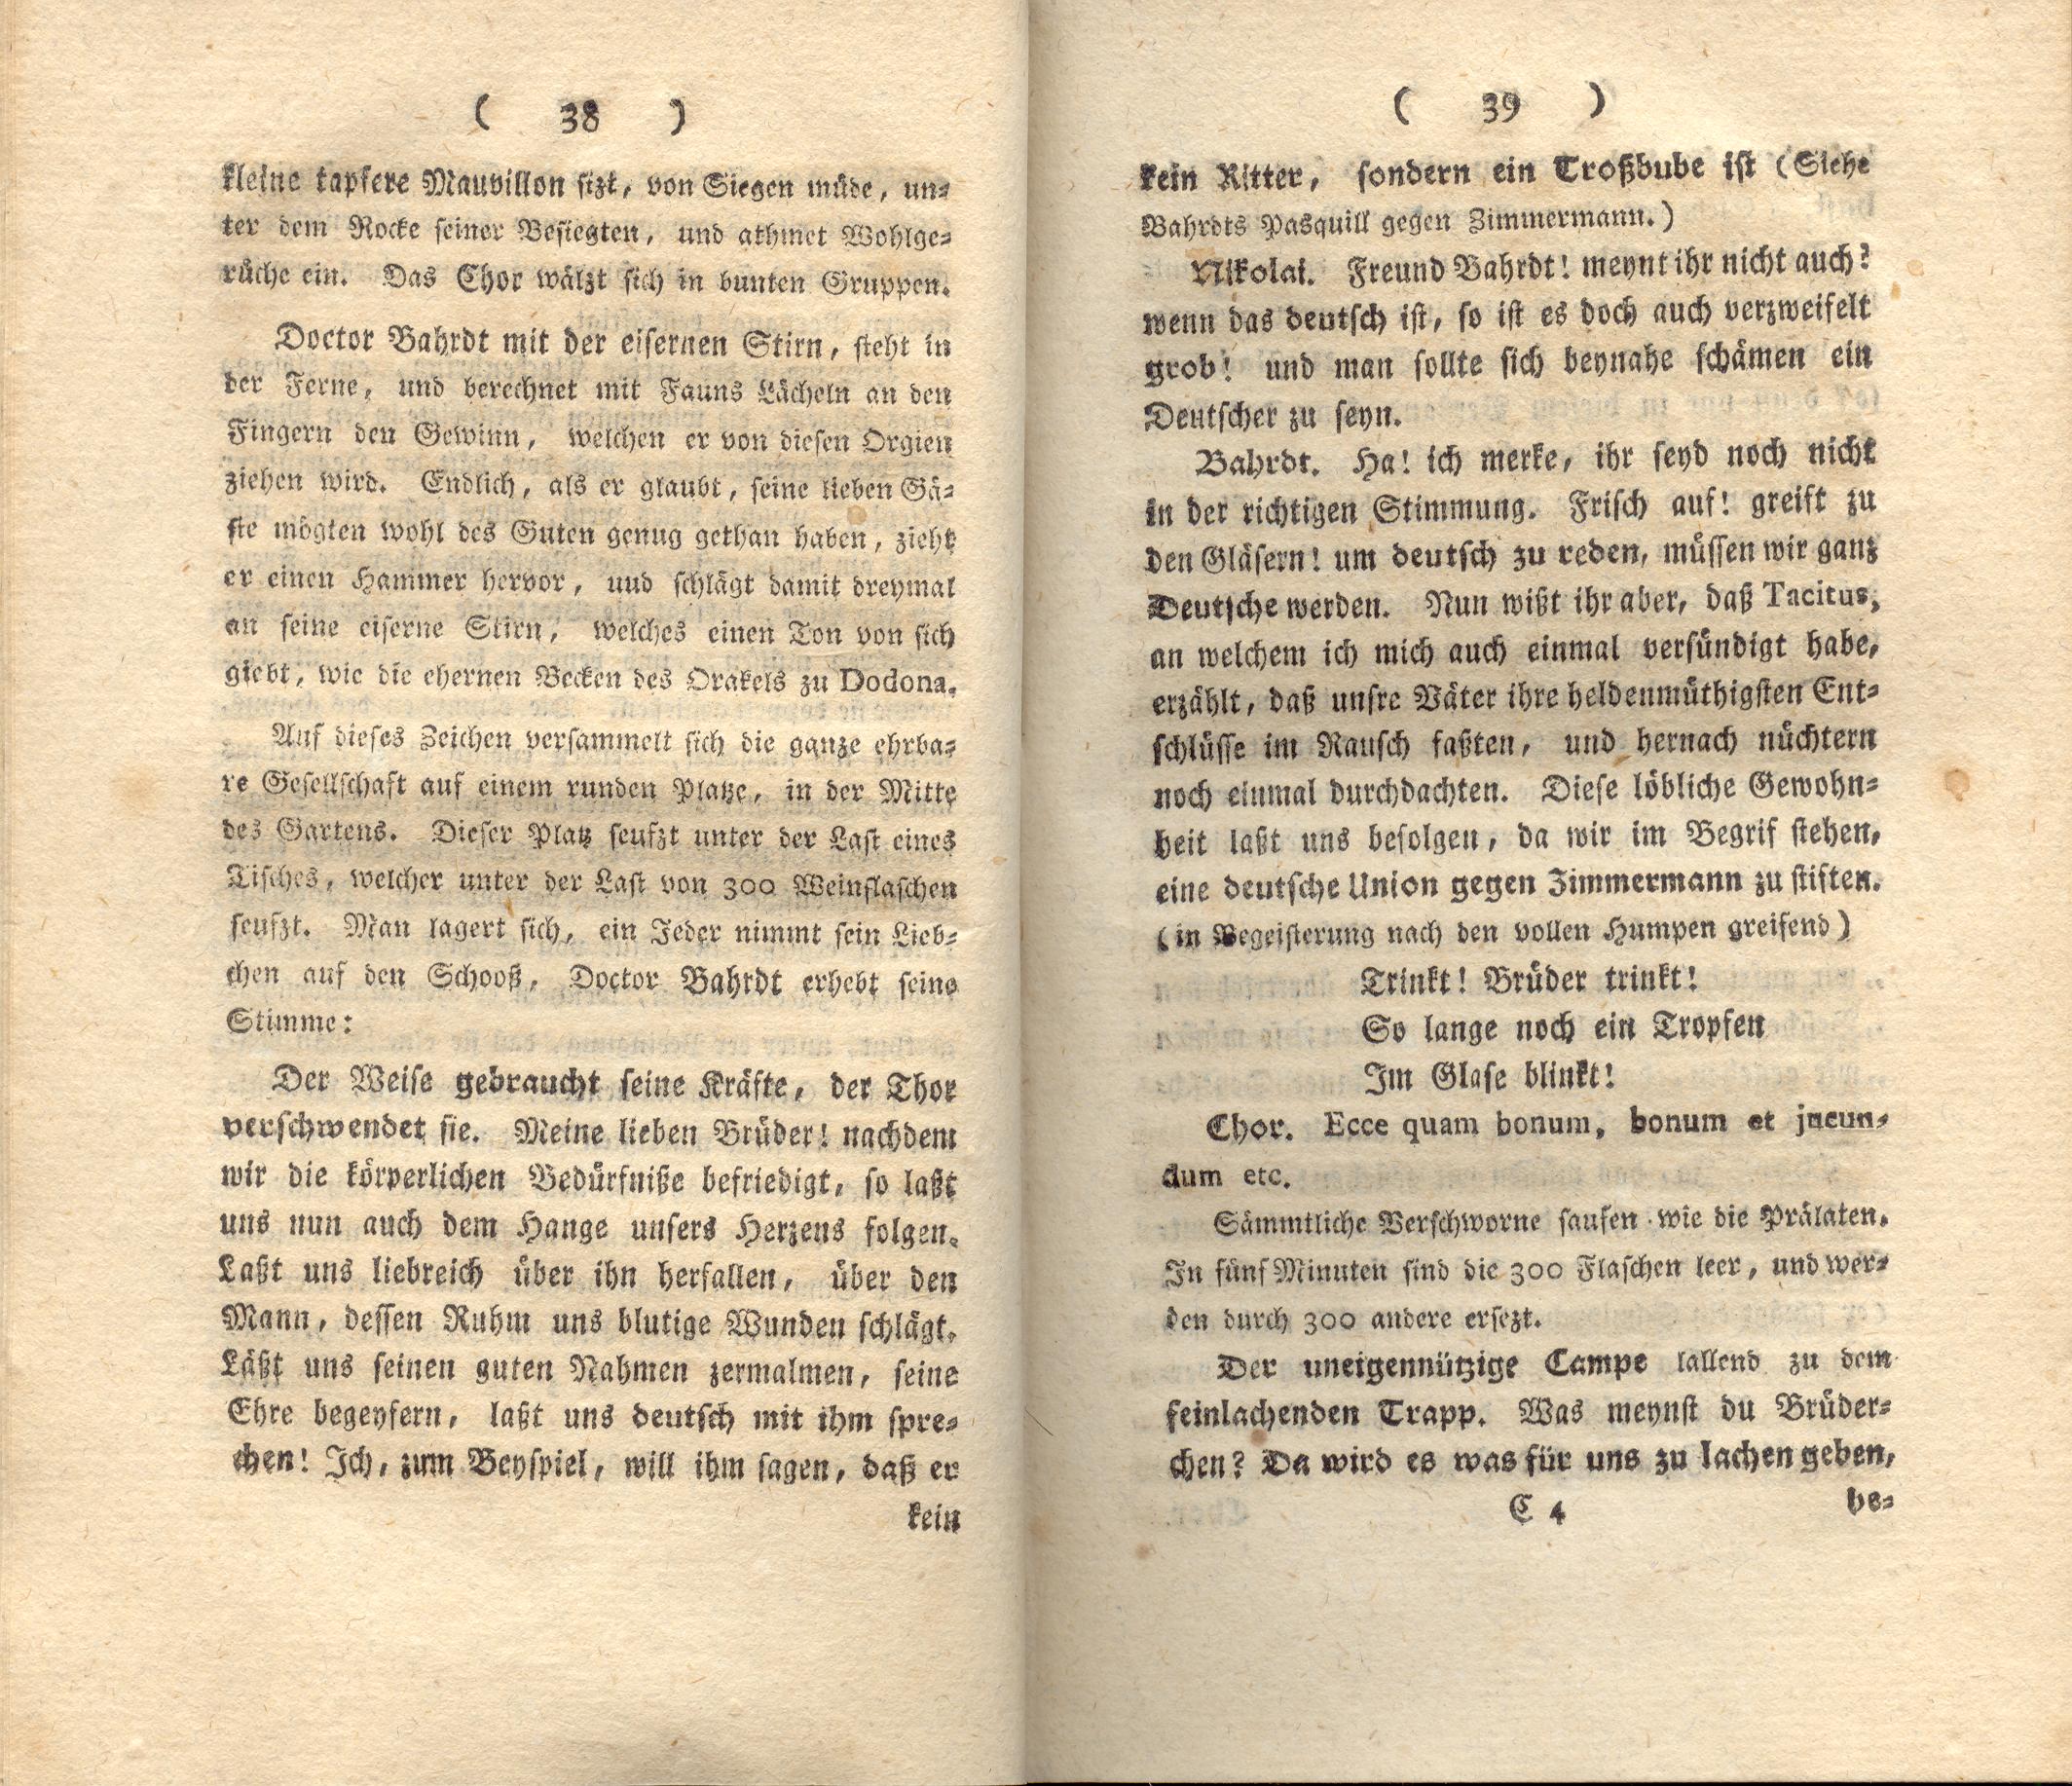 Doctor Bahrdt mit der eisernen Stirn (1790) | 21. (38-39) Põhitekst